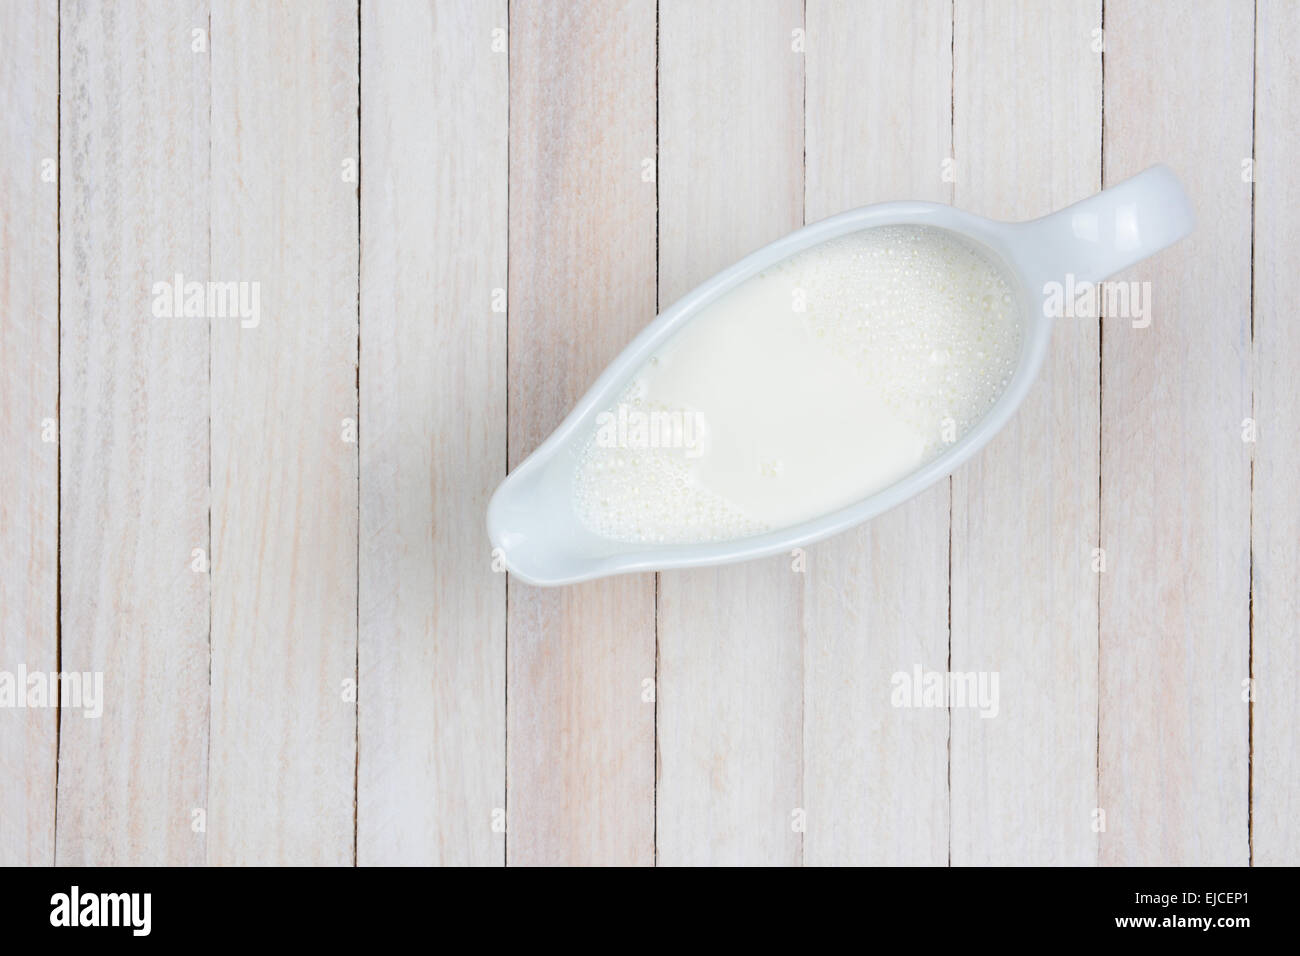 Coup de frais généraux d'une cruche de lait sur une table de cuisine blancs rustique. Format horizontal avec l'exemplaire de l'espace. Banque D'Images